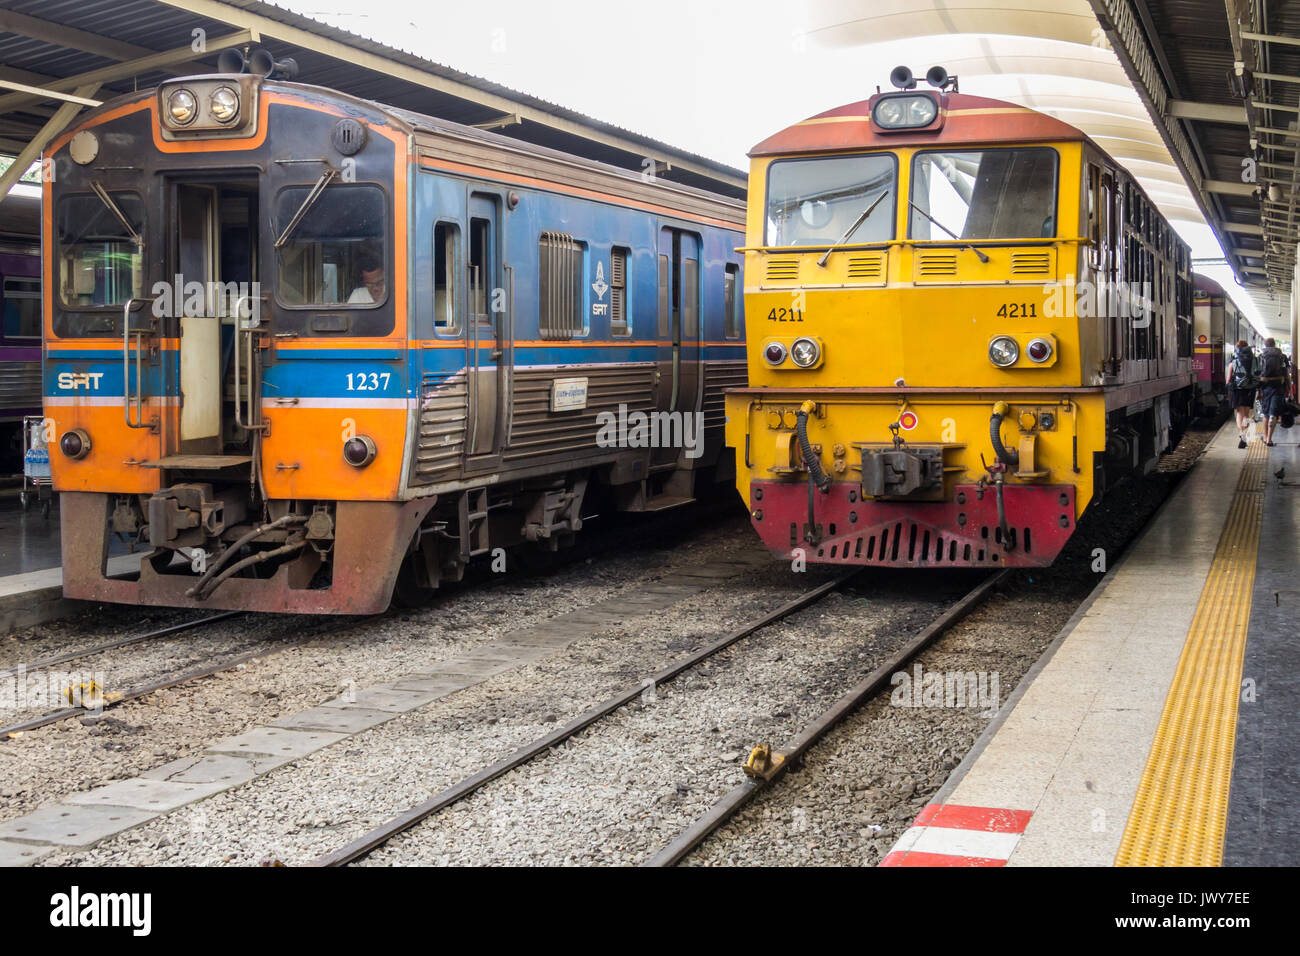 Diesel locomotives stood at platforms, Hua Lamphong railway station, Bangkok, Thailand Stock Photo